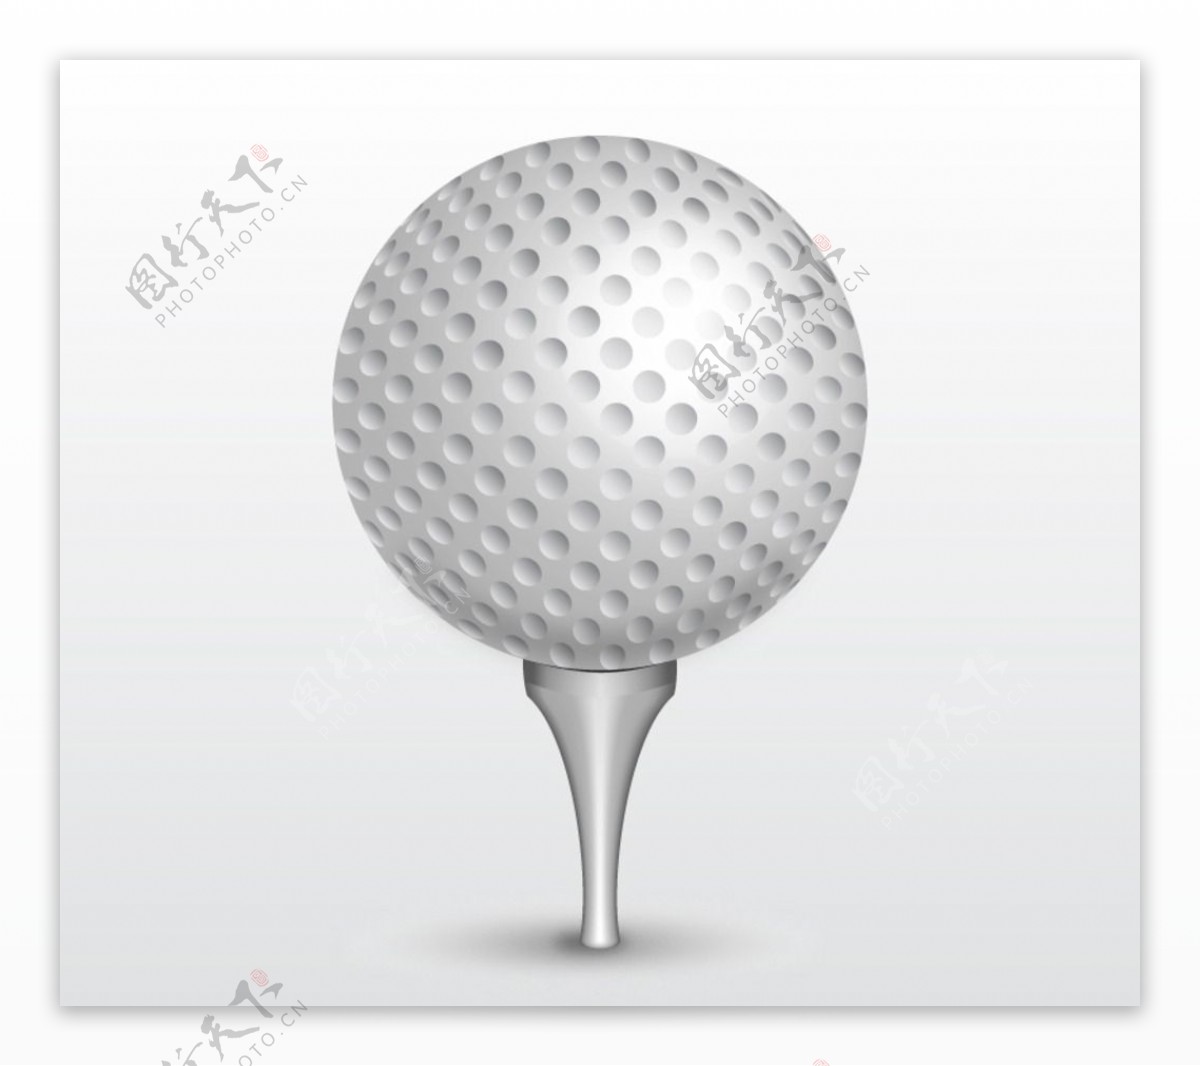 精美白色高尔夫球矢量素材